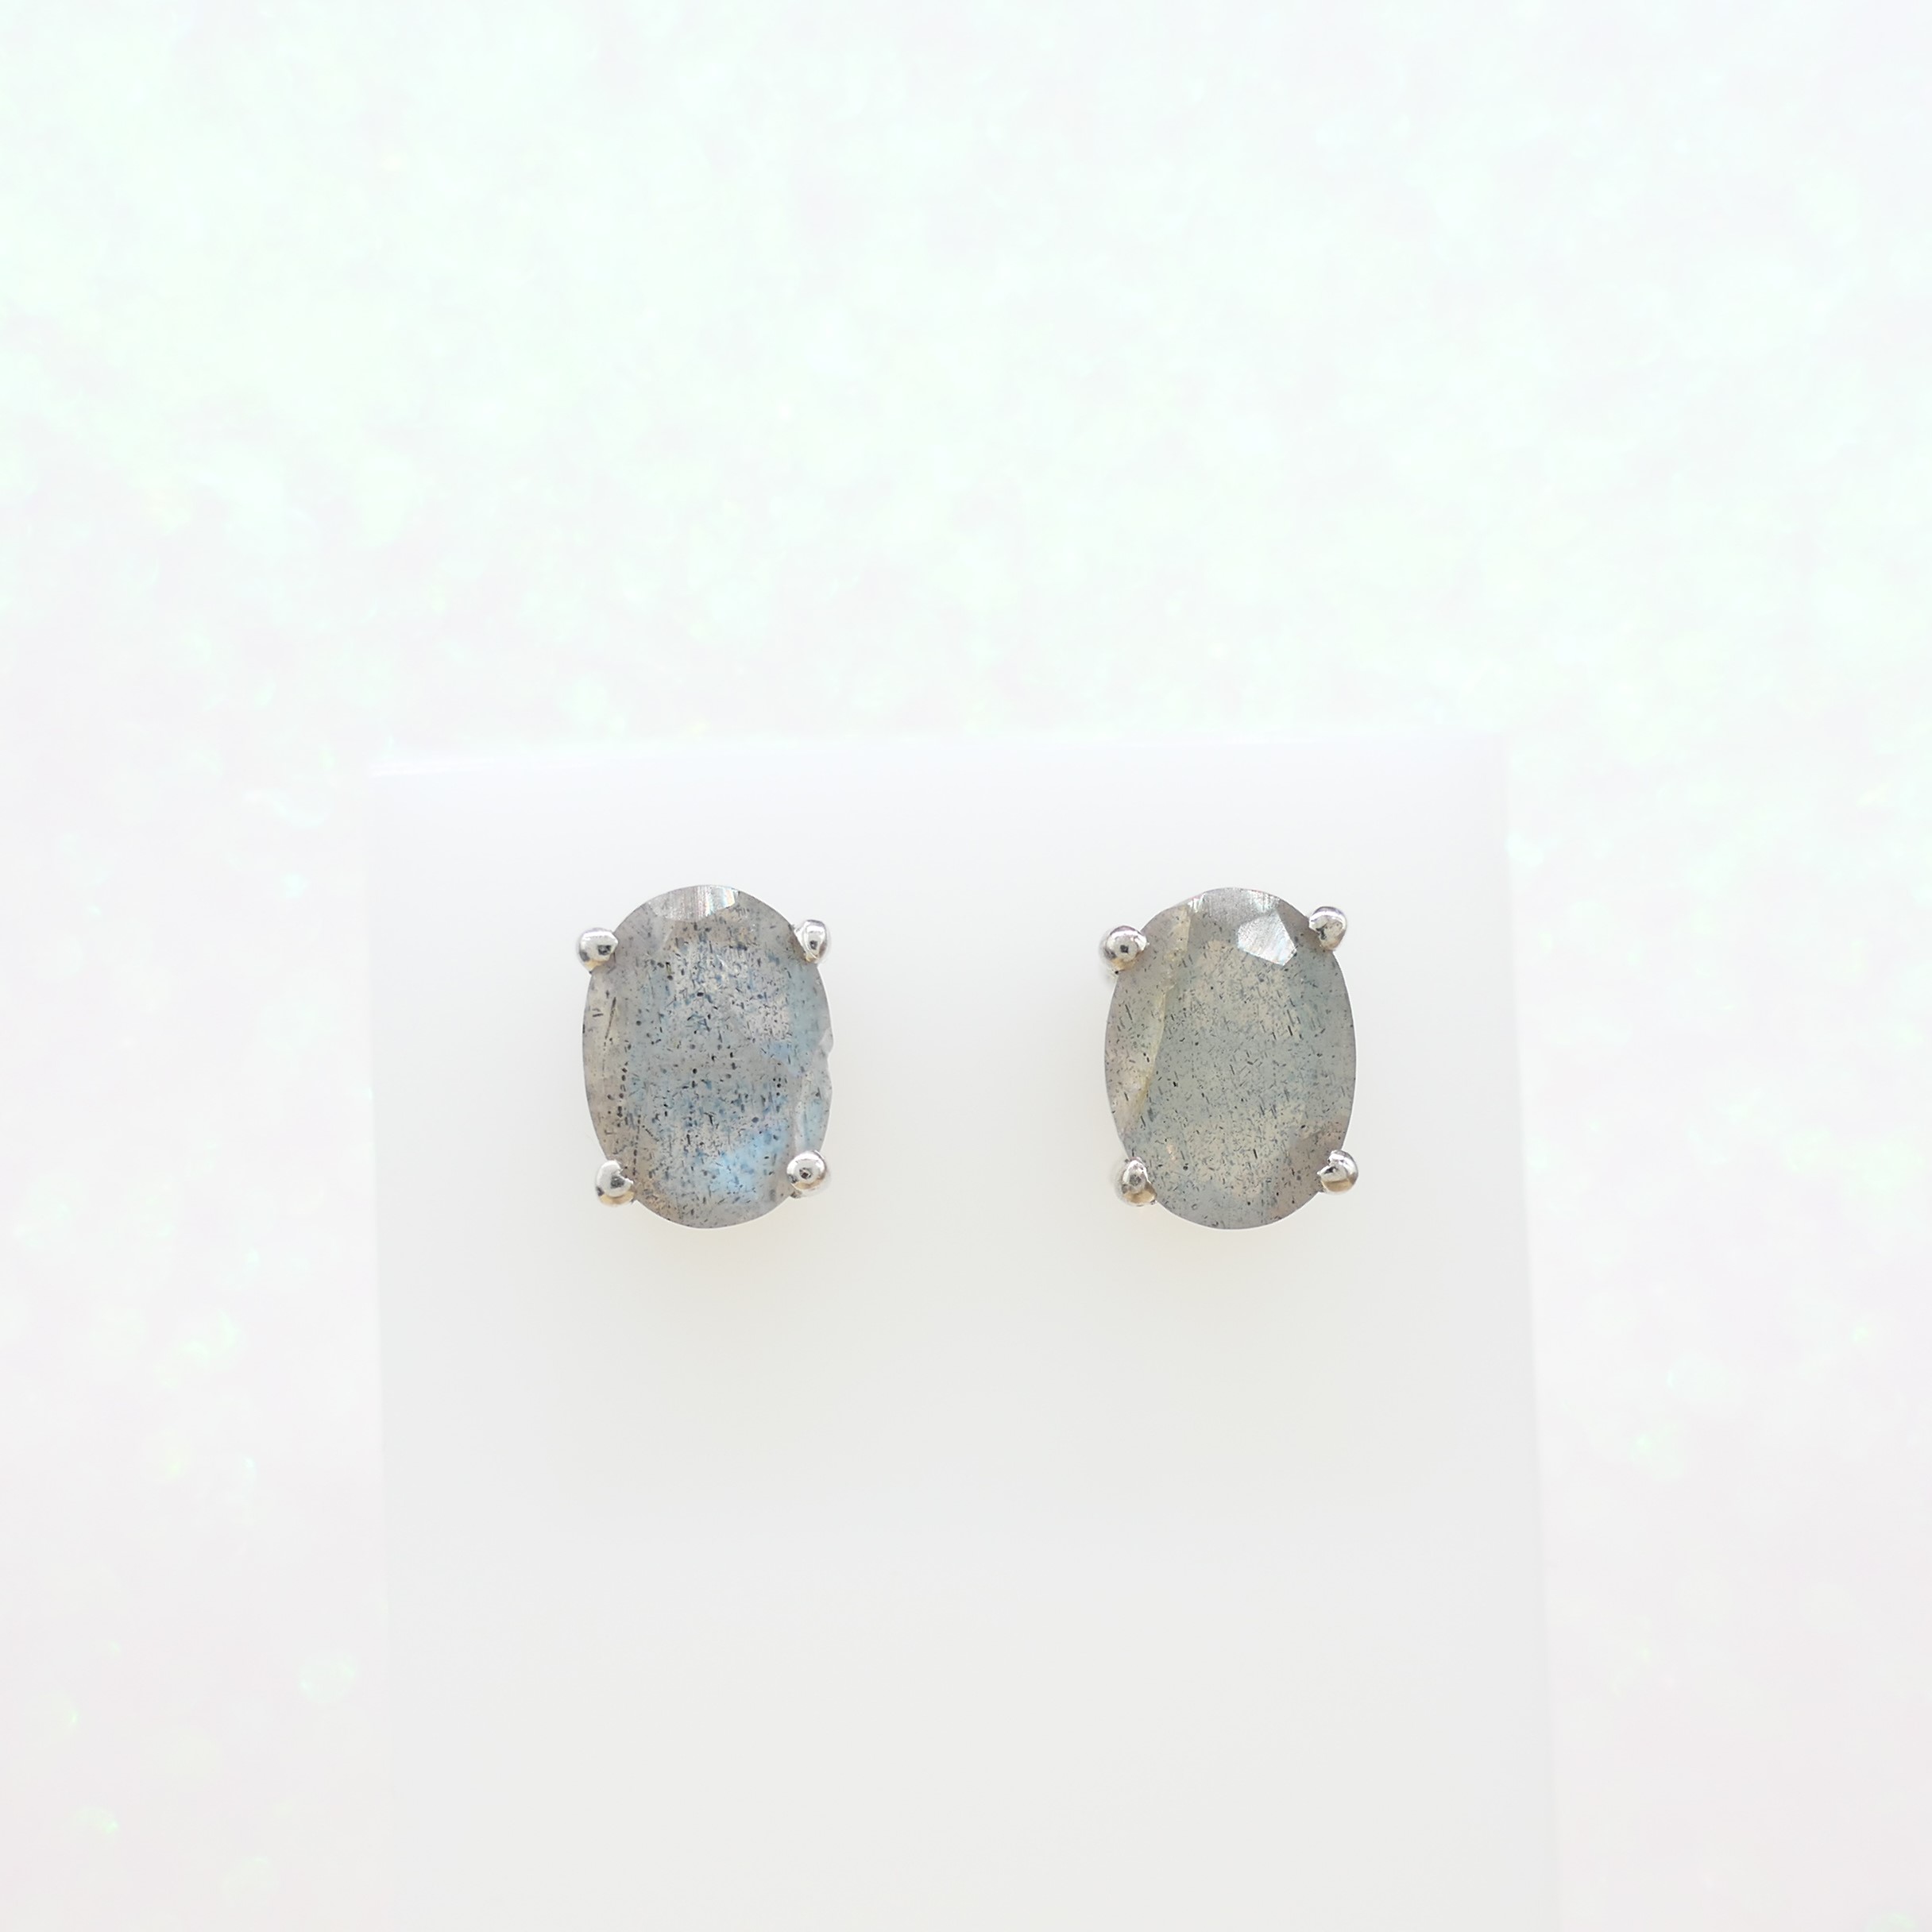 Pair of Oval Cut Labradorite Gemstone Silver Stud Earrings - Image 6 of 6